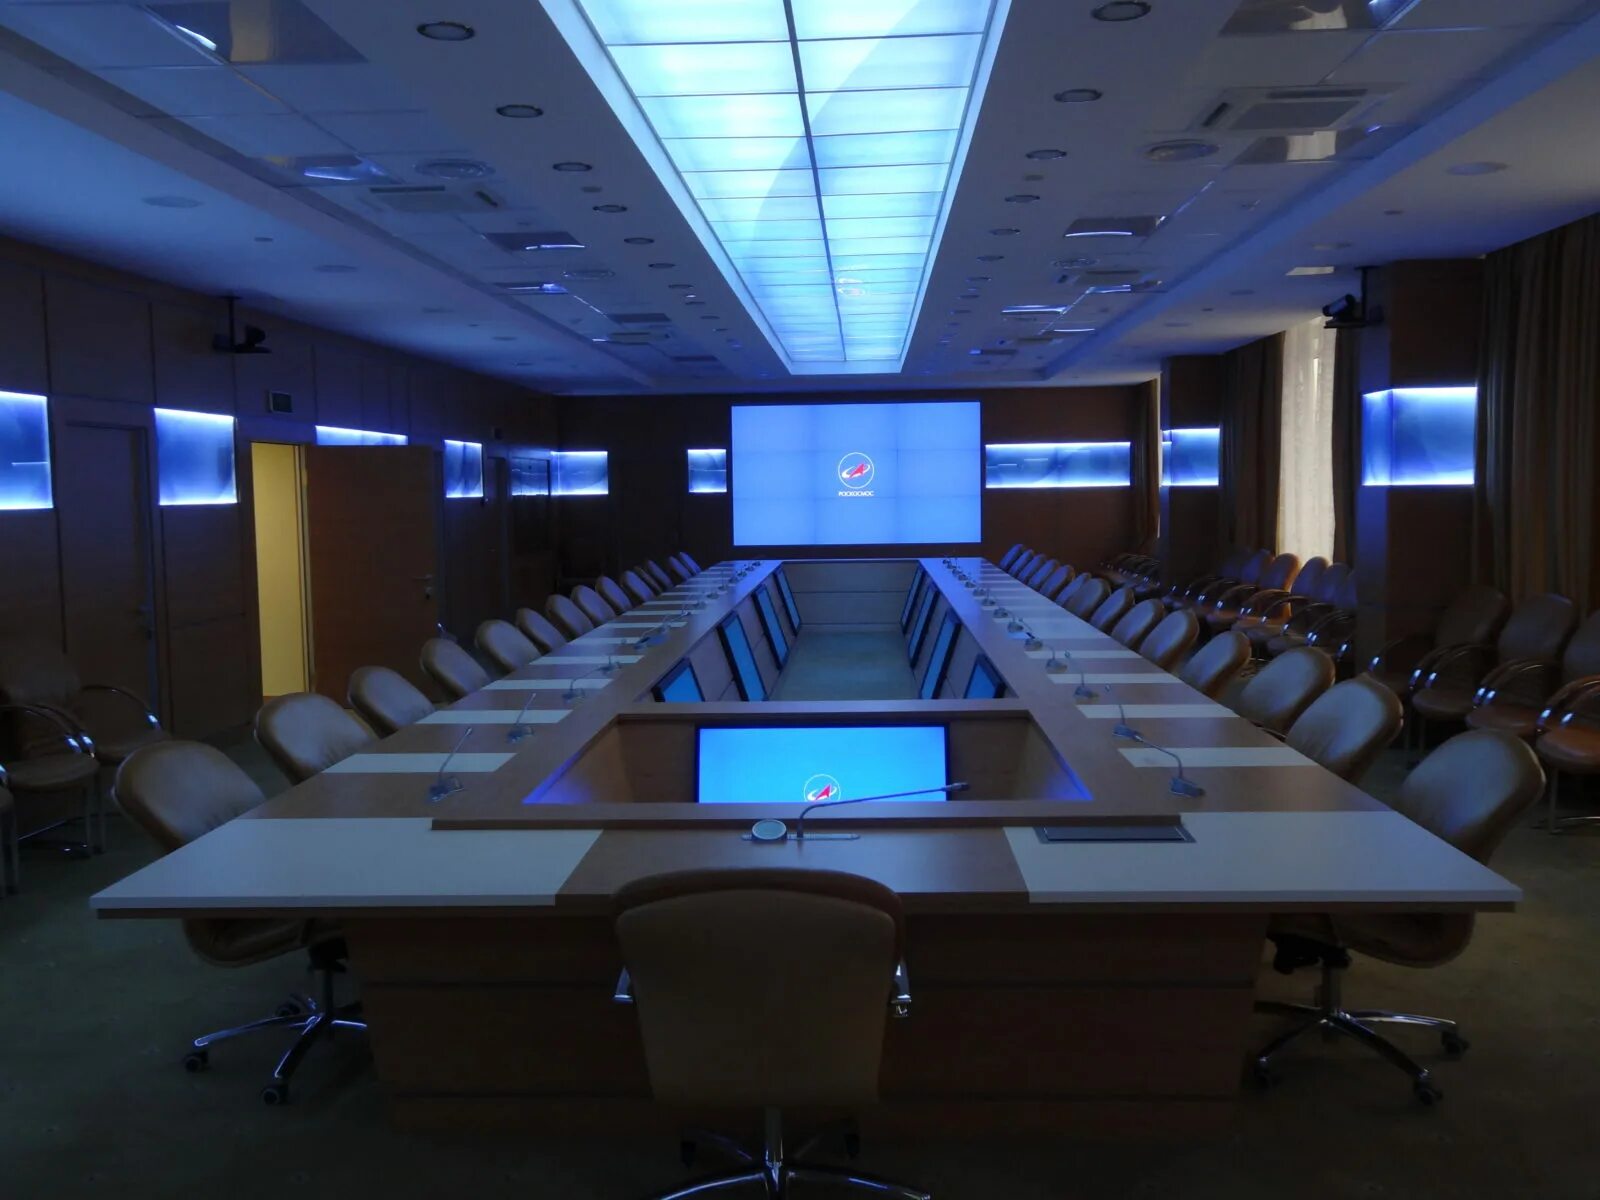 Системы ВКС для конференц-зала. Конференц зал ВКС дублирующие мониторы. Конференц зал Северное море Иркутск. Зал для конференций.